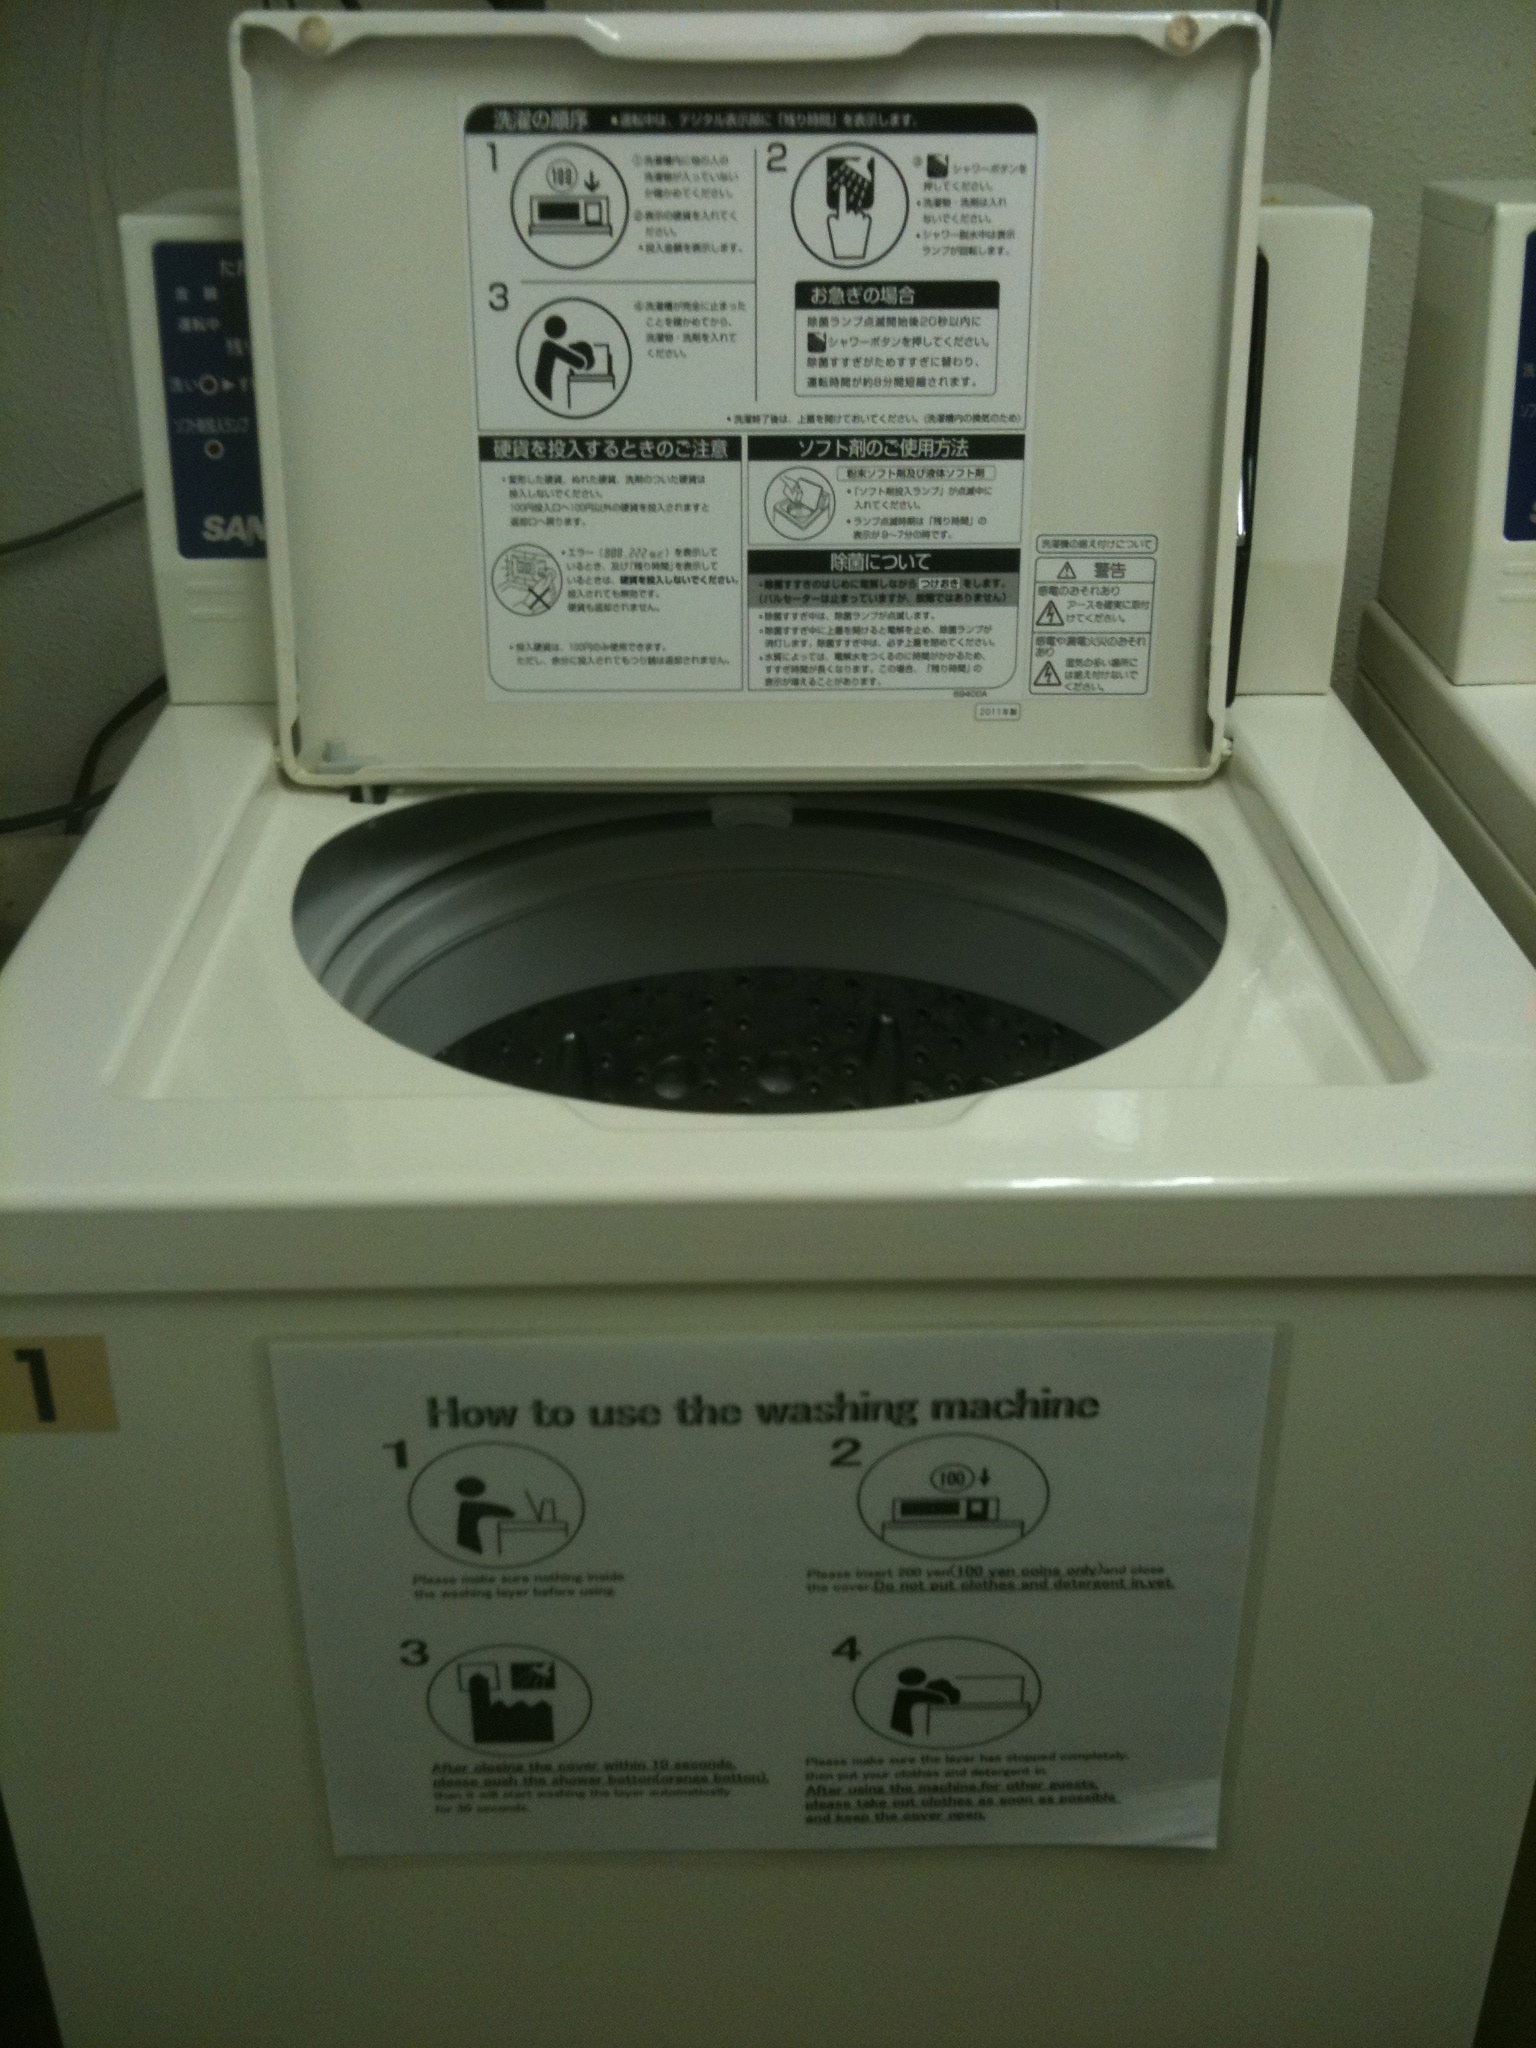 Instrucciones de uso de las lavadoras